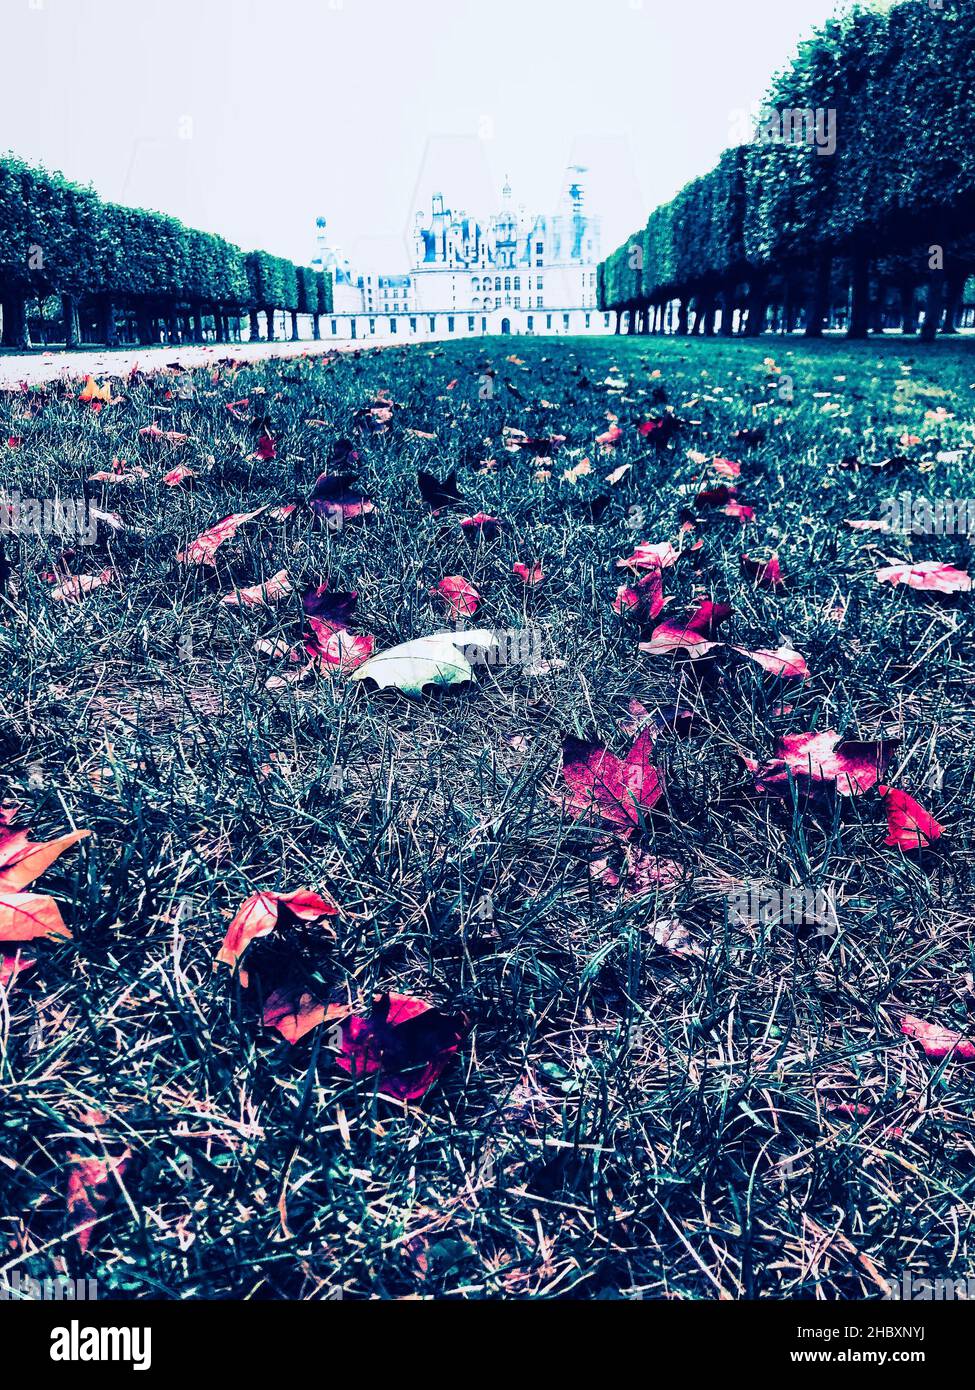 Des feuilles mortes reddifiées sur le sol devant le château de Chambord en automne Banque D'Images